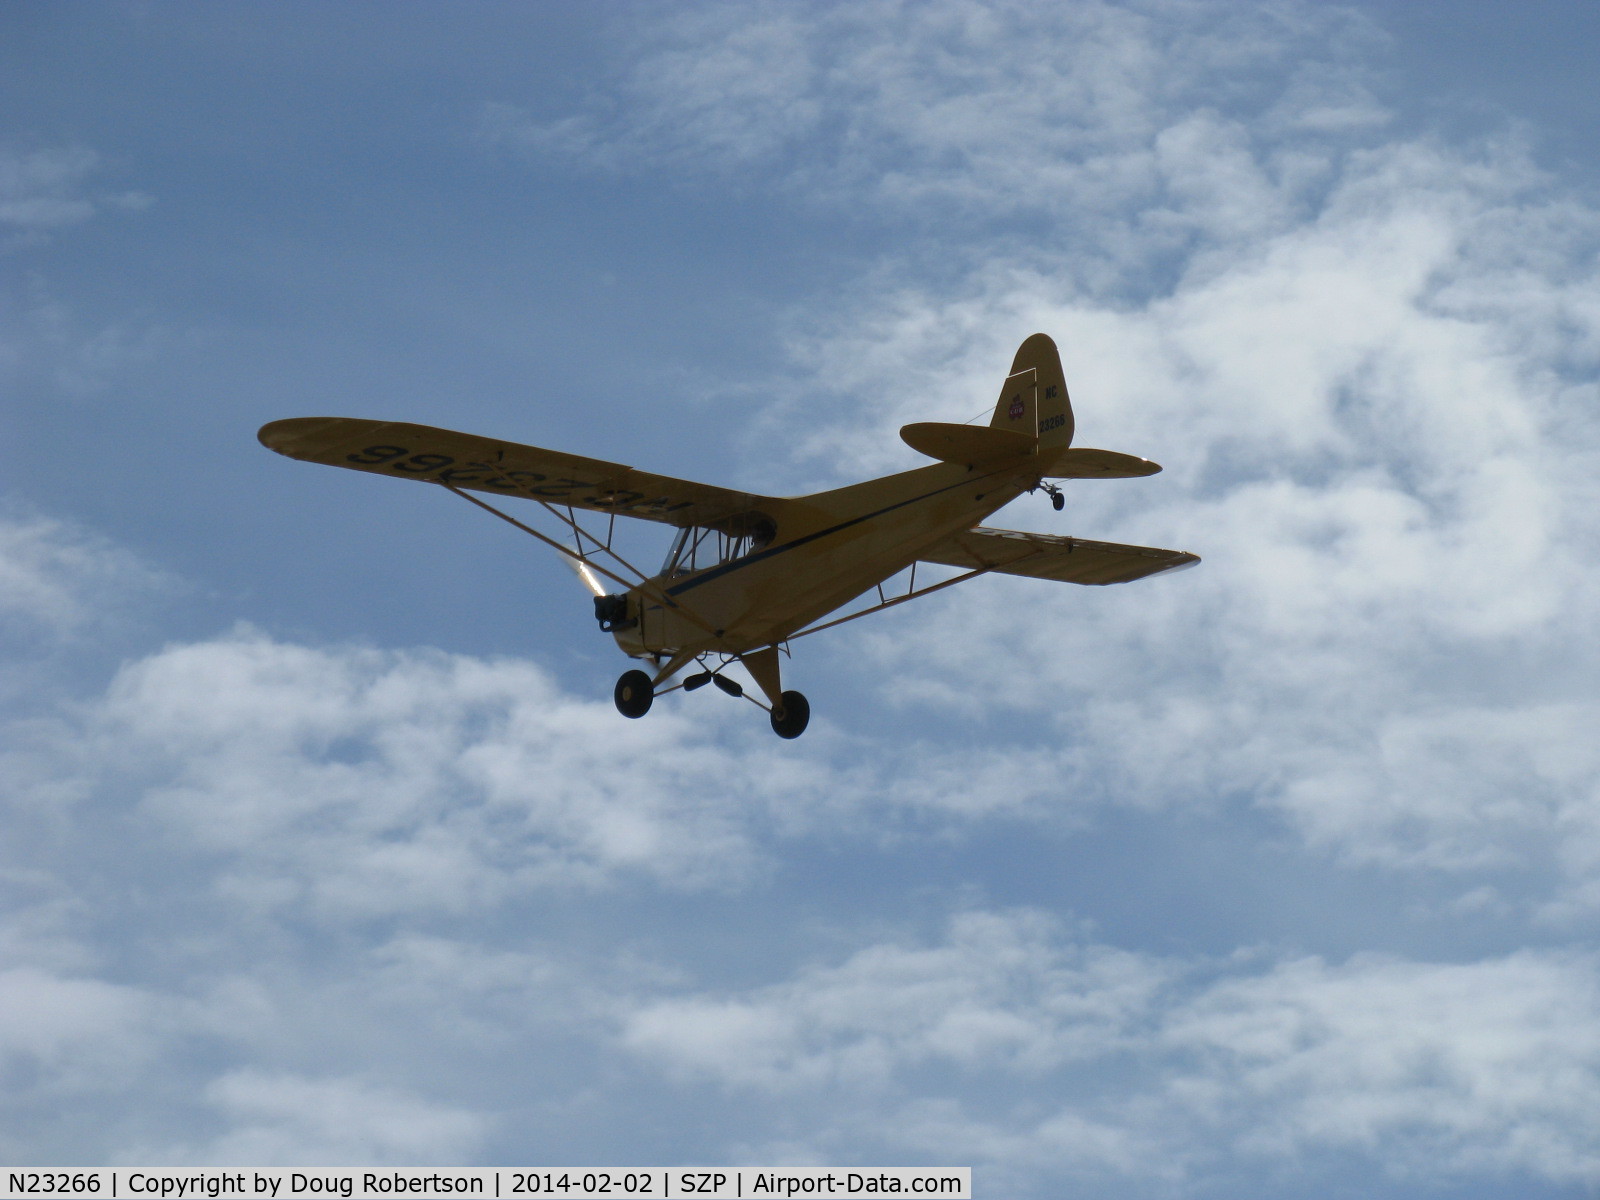 N23266, 1939 Piper J3C-65 Cub Cub C/N 3113, 1939 Piper J3C-65 CUB, Continental A&C65 65 Hp, takeoff climb Rwy 04